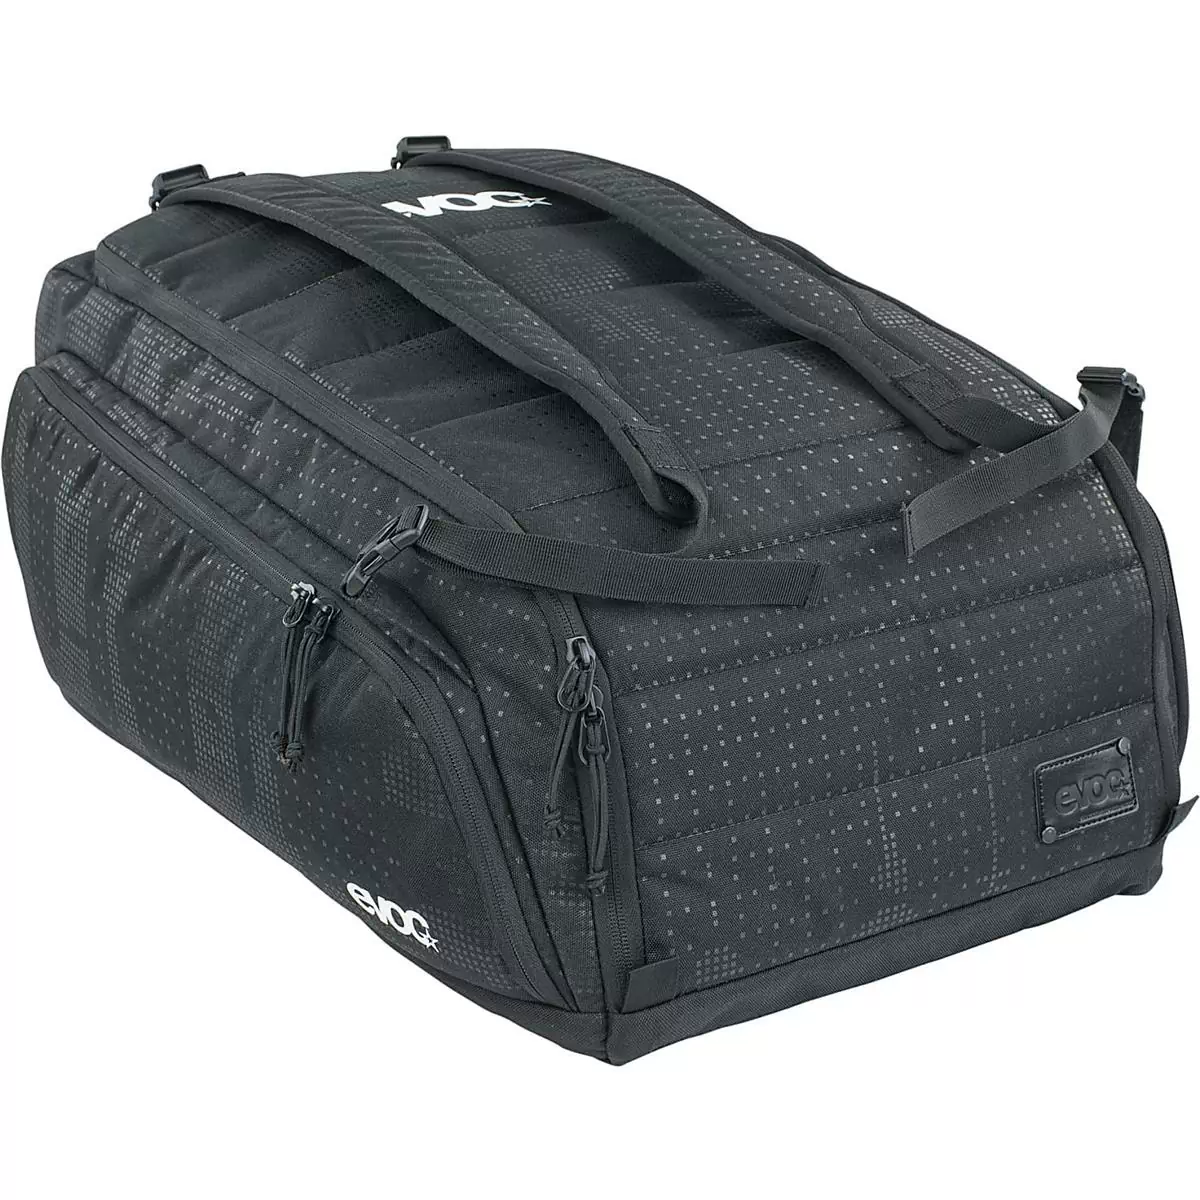 Borsa Viaggio Gear Bag 55L nero - image